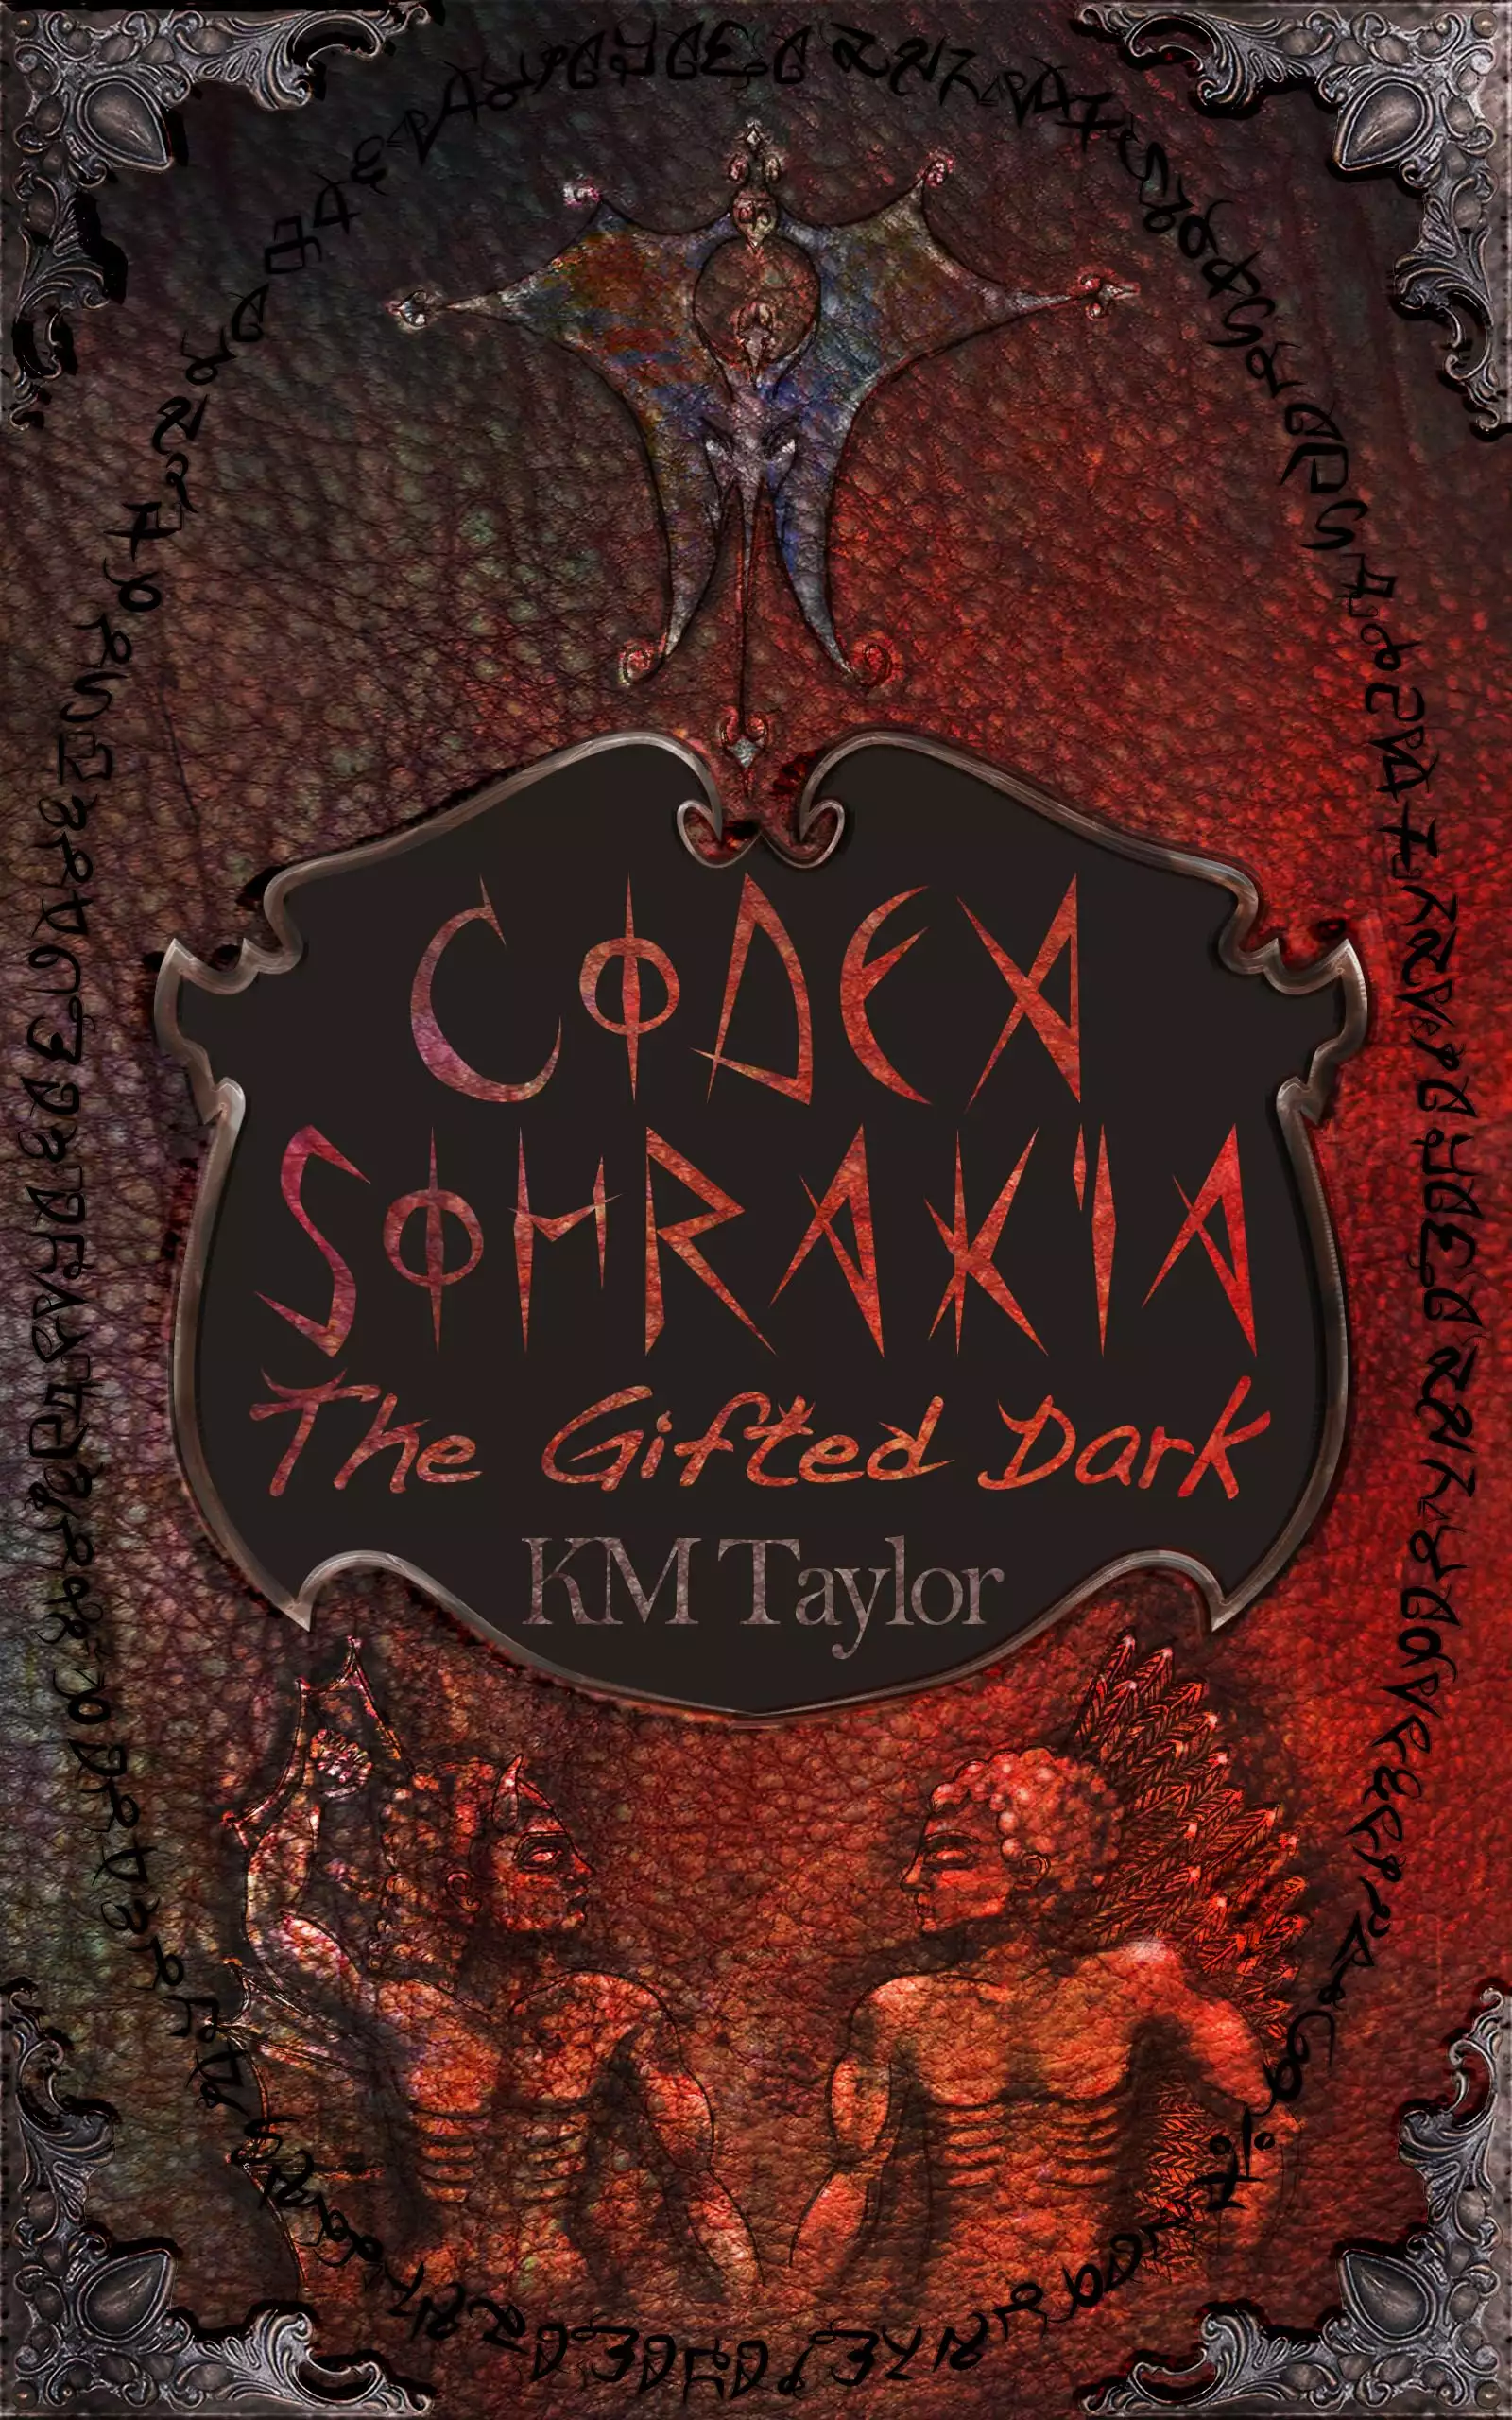 Codex Sohrakia: The Gifted Dark